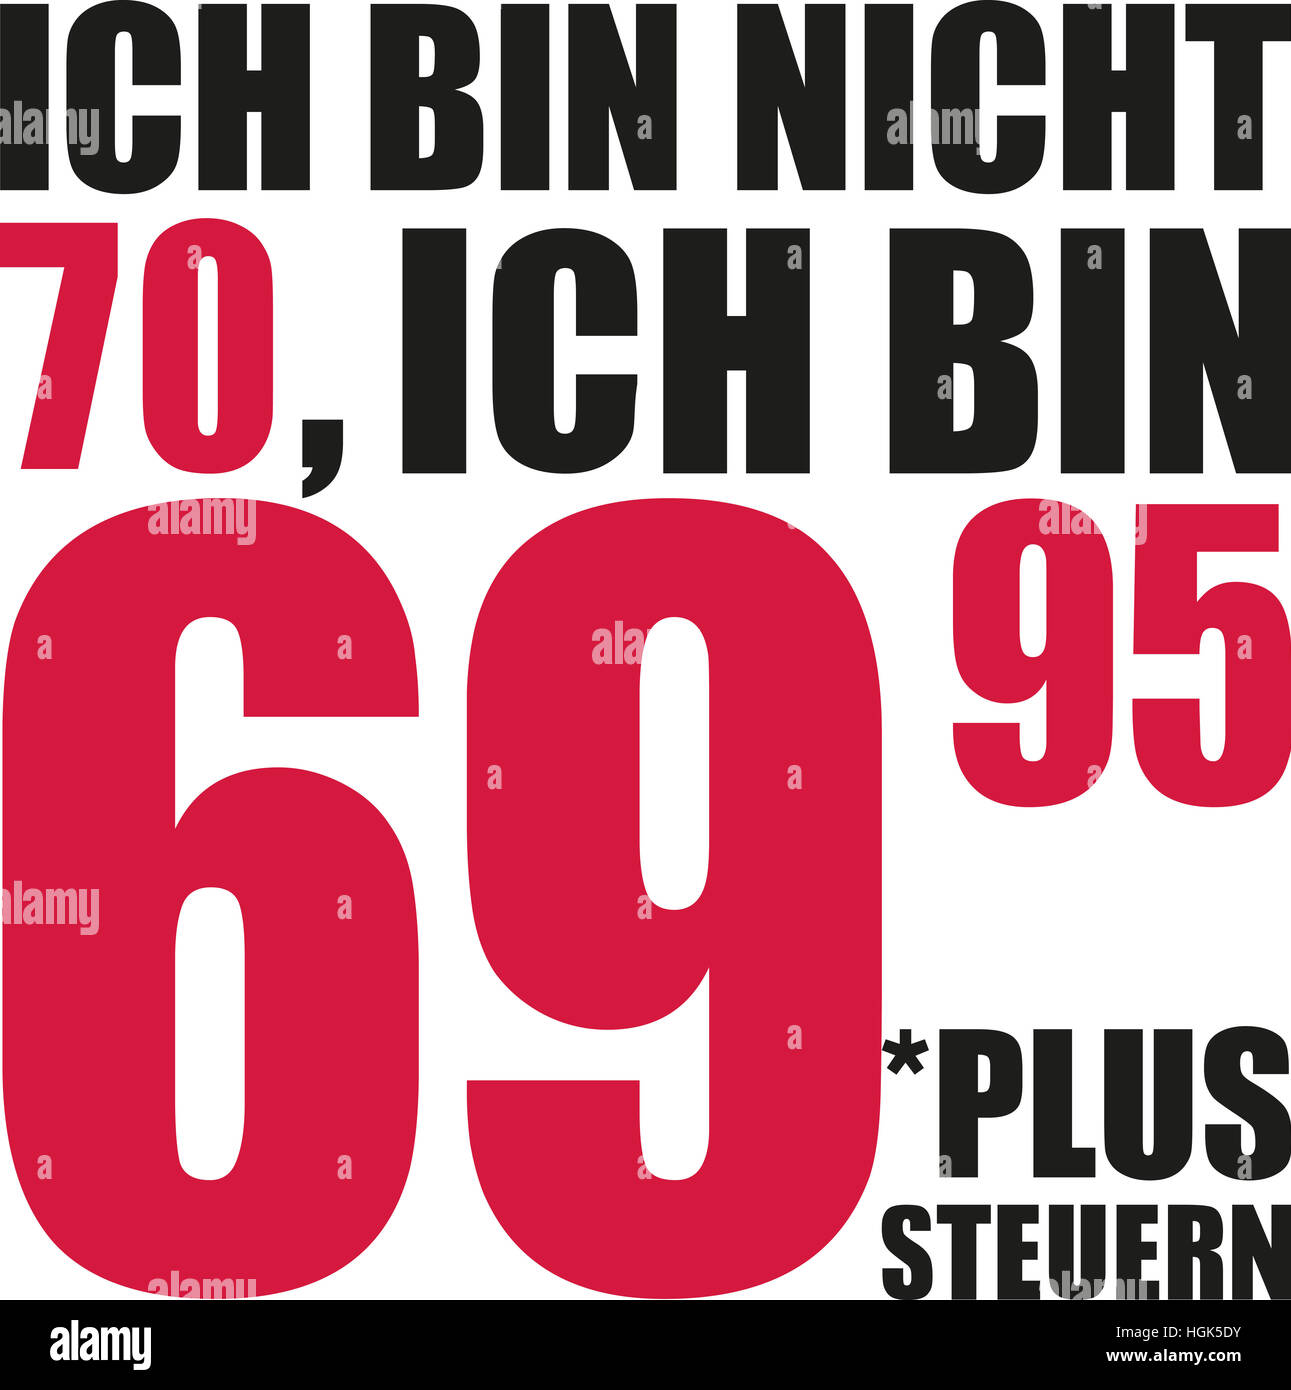 Non sto 70, sto 69.95 più le tasse - il settantesimo compleanno tedesco Foto Stock